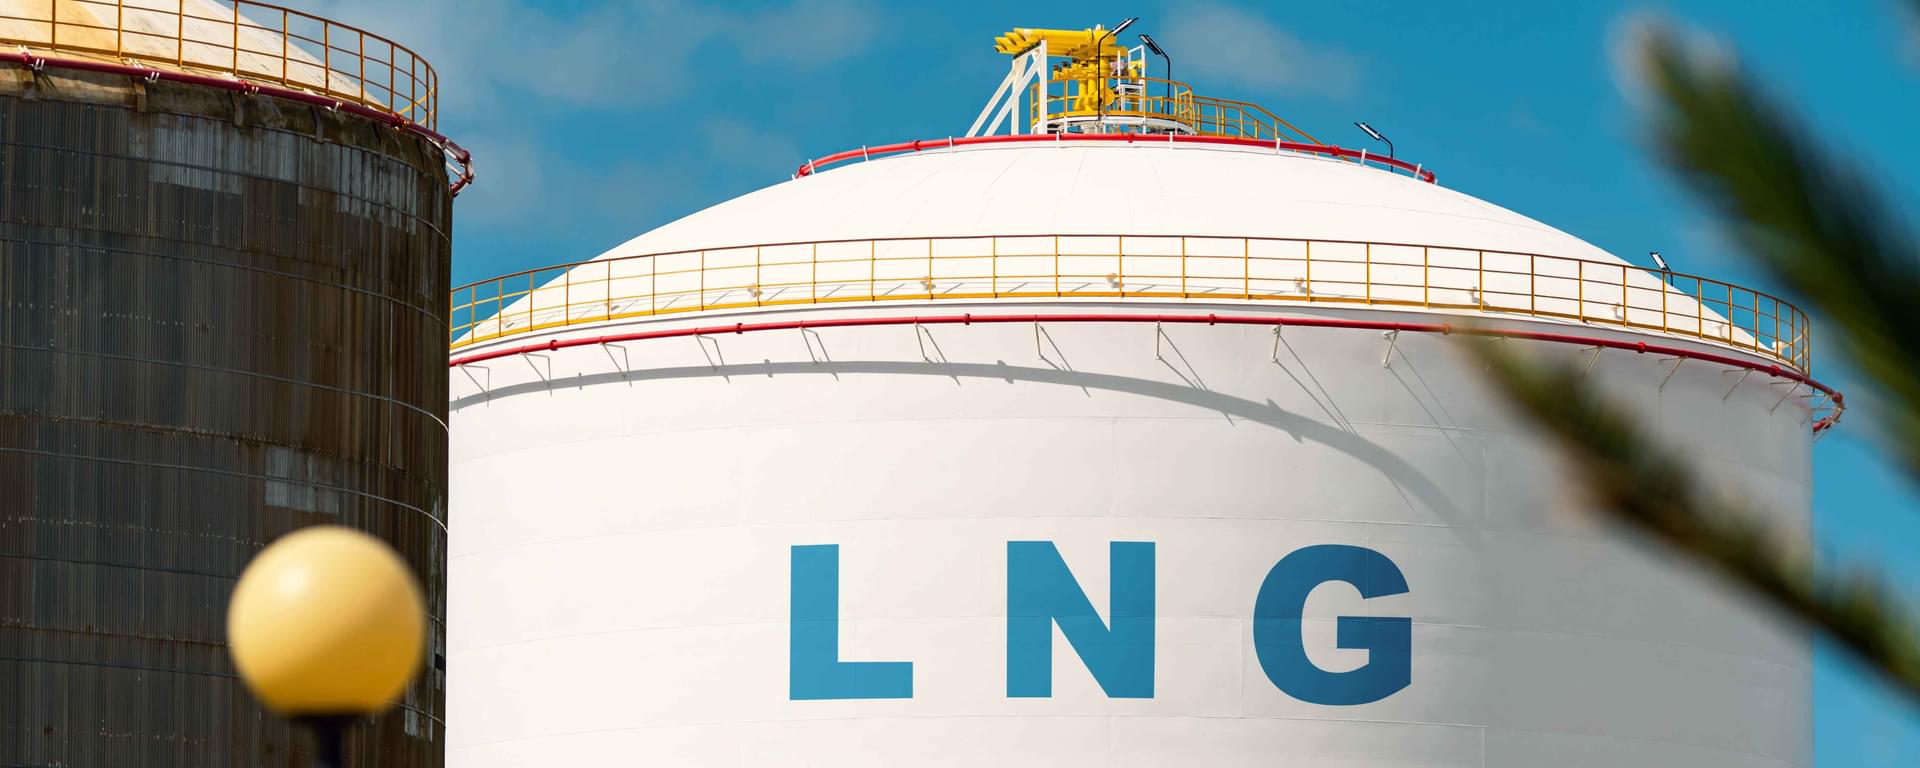 LNG tank storage at natural gas station